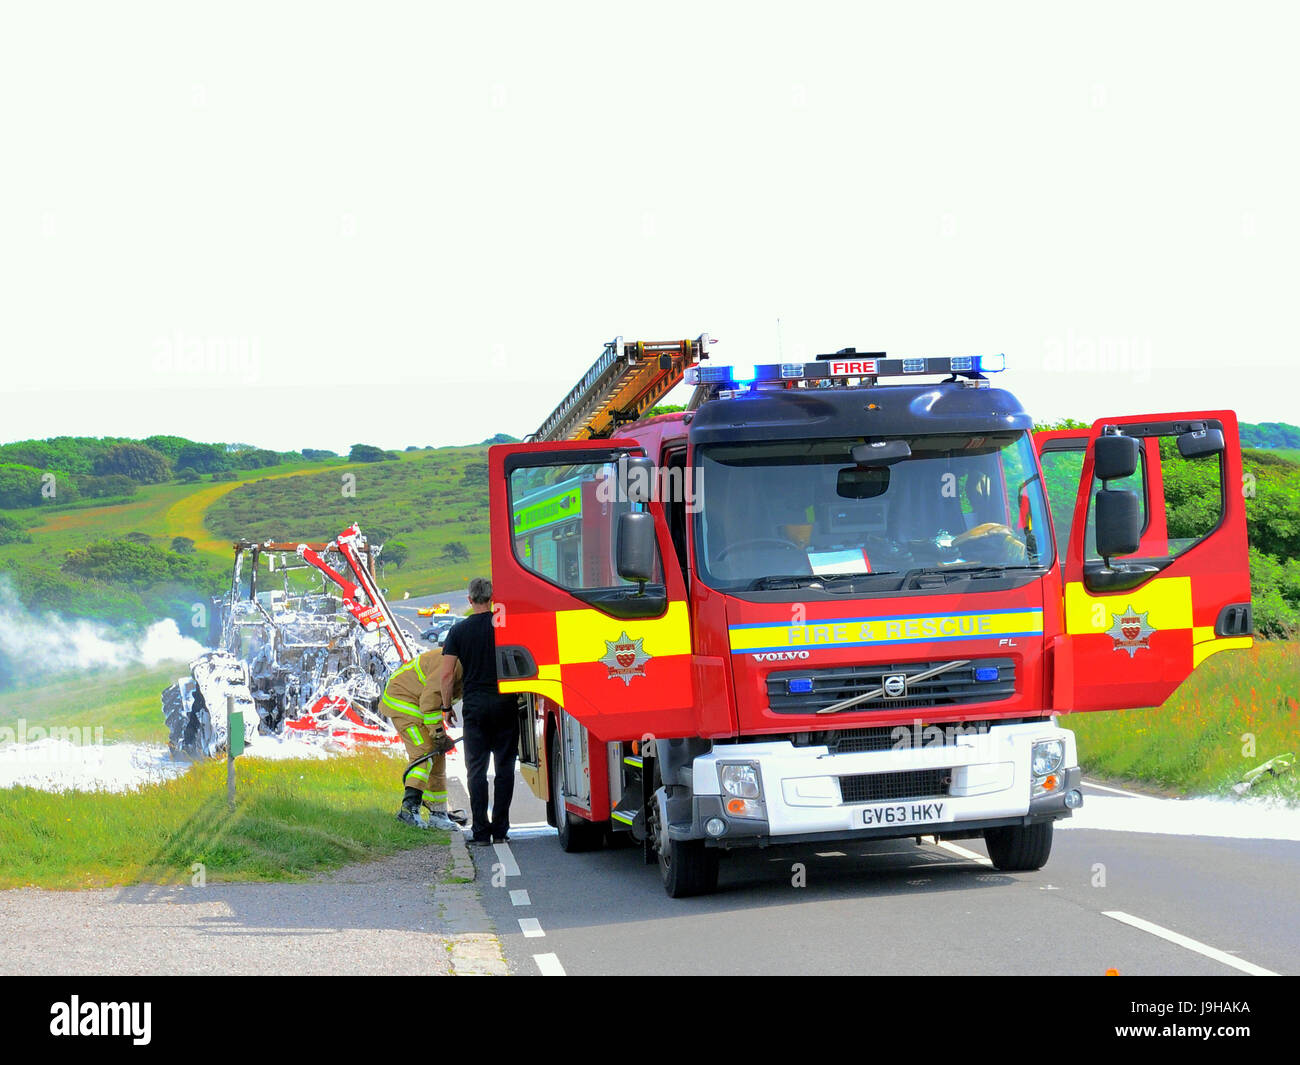 Eastbourne, East Sussex, UK.le feu de tracteur sur Beachy Head Road a été éteint par une brigade de pompiers, aucune victime, mais le tracteur semble complètement brûlé. Banque D'Images